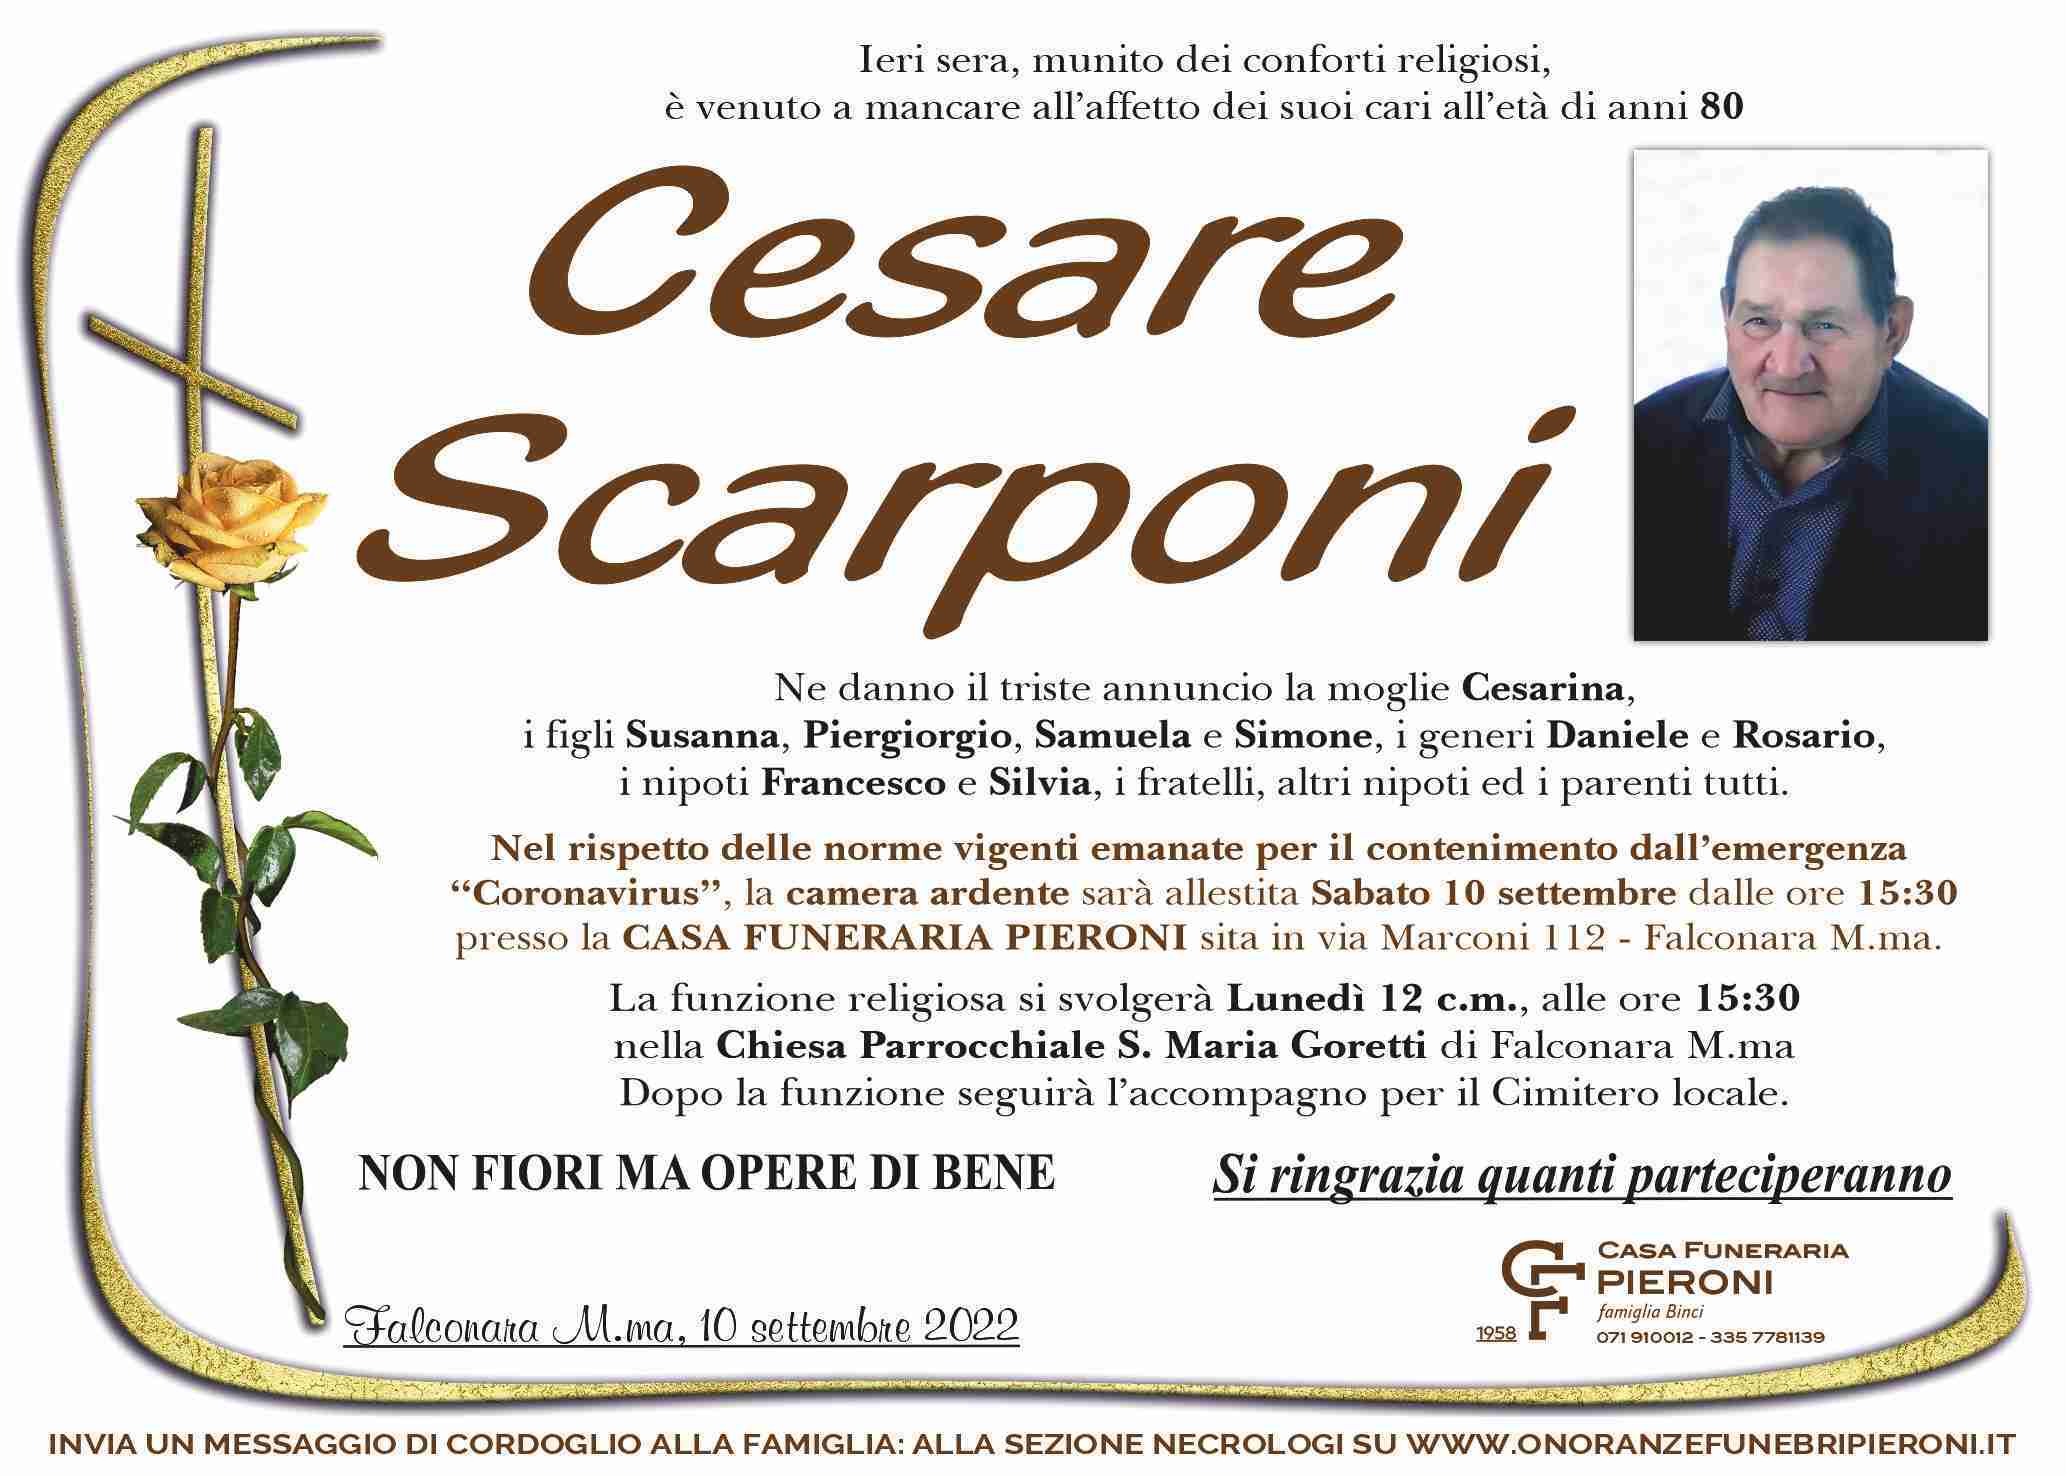 Cesare Scarponi